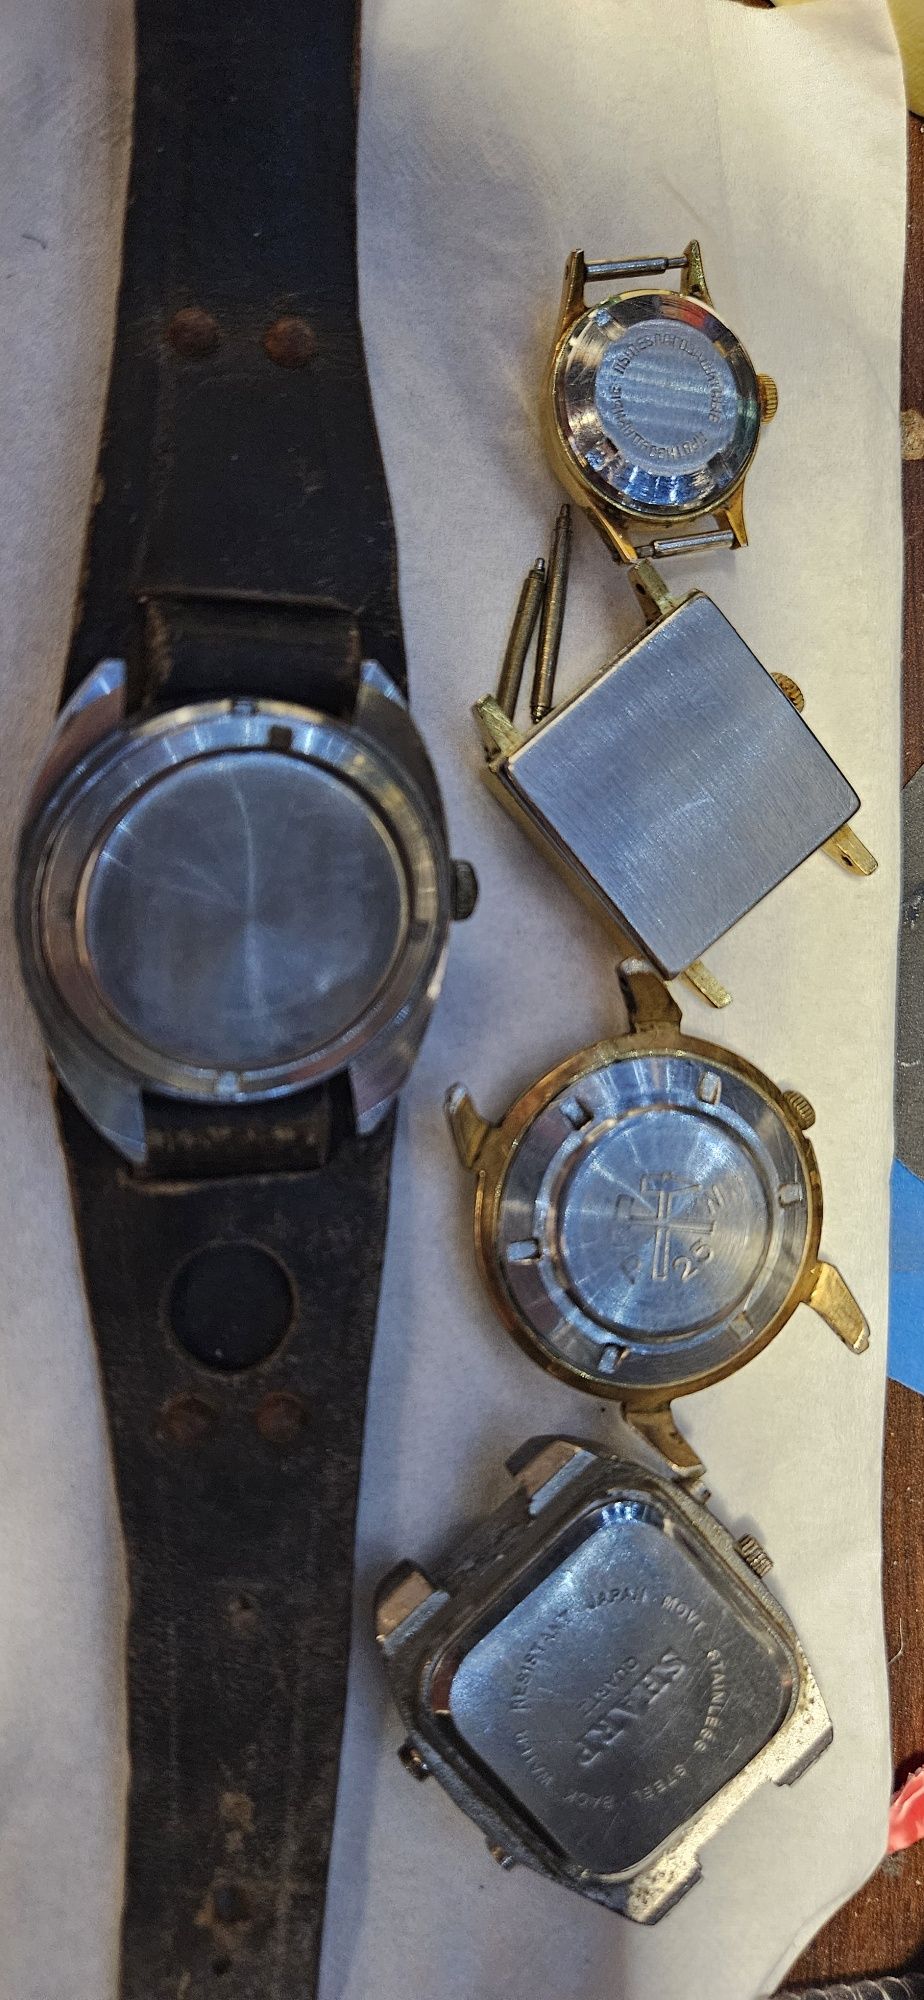 Stare złote/srebrne zegarki zamiana na nowoczesny.